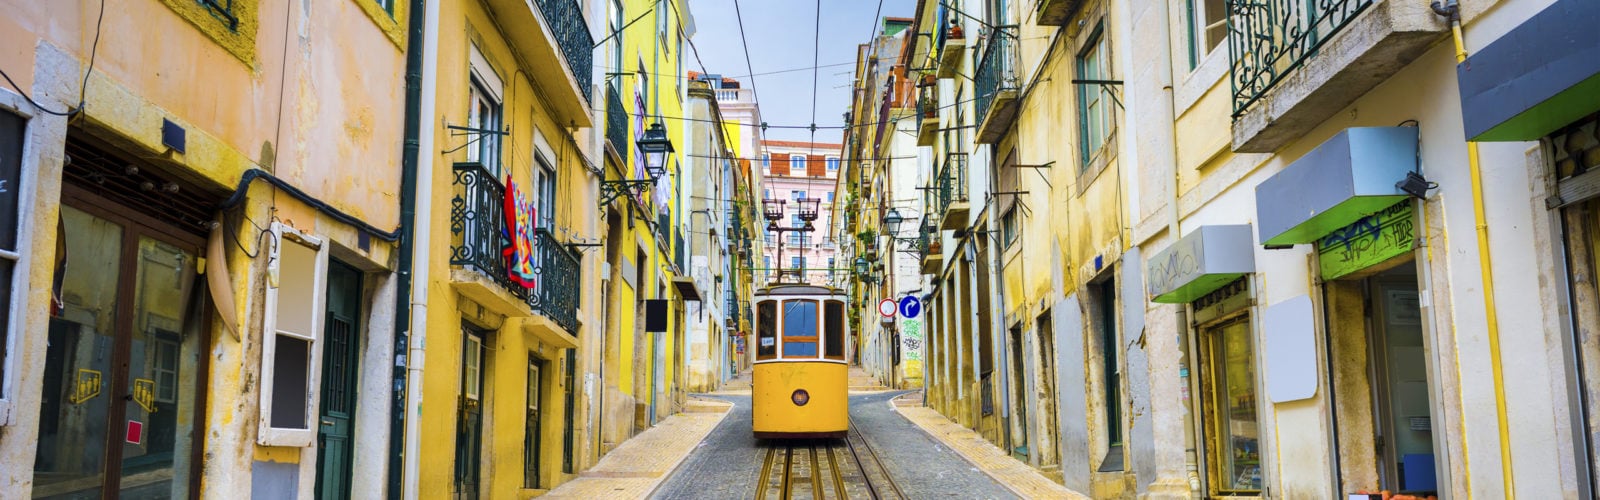 lisbon-tram